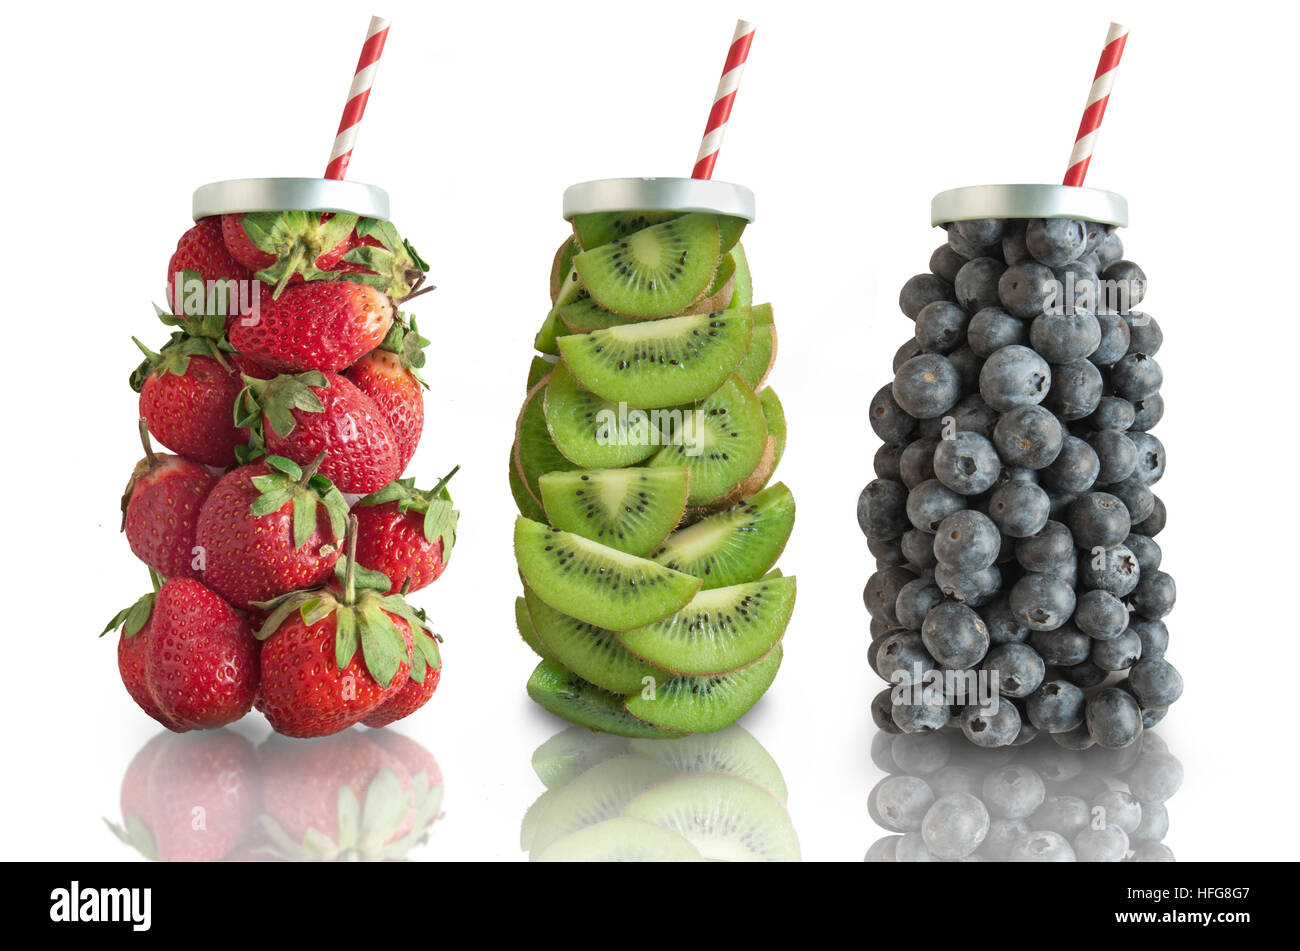 Früchte in Form eines Getränkes mit Stroh darunter Erdbeeren, Kiwis und Heidelbeeren Stockfoto